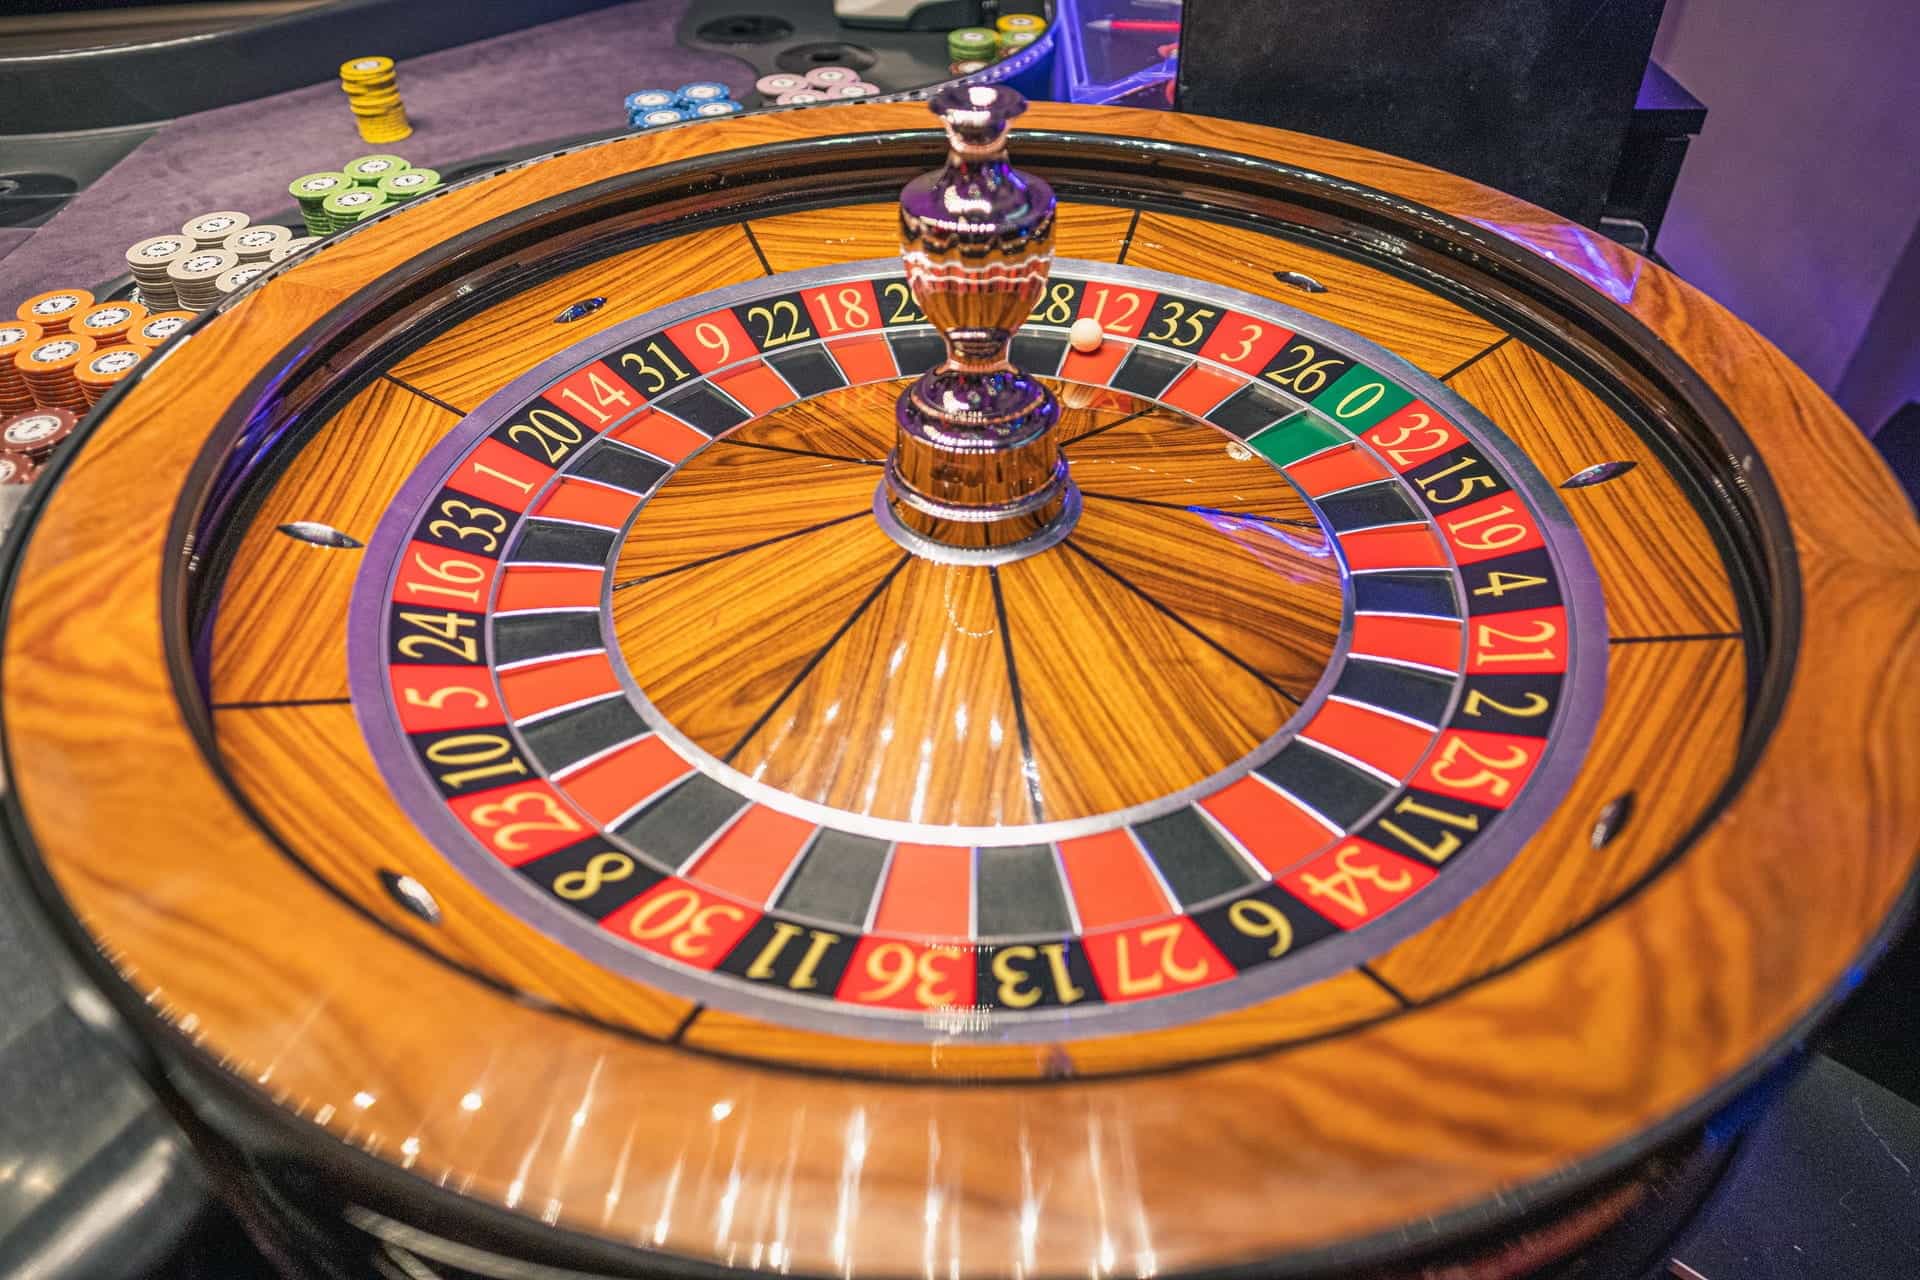 Roulette-Tisch in einem stationären Casino.